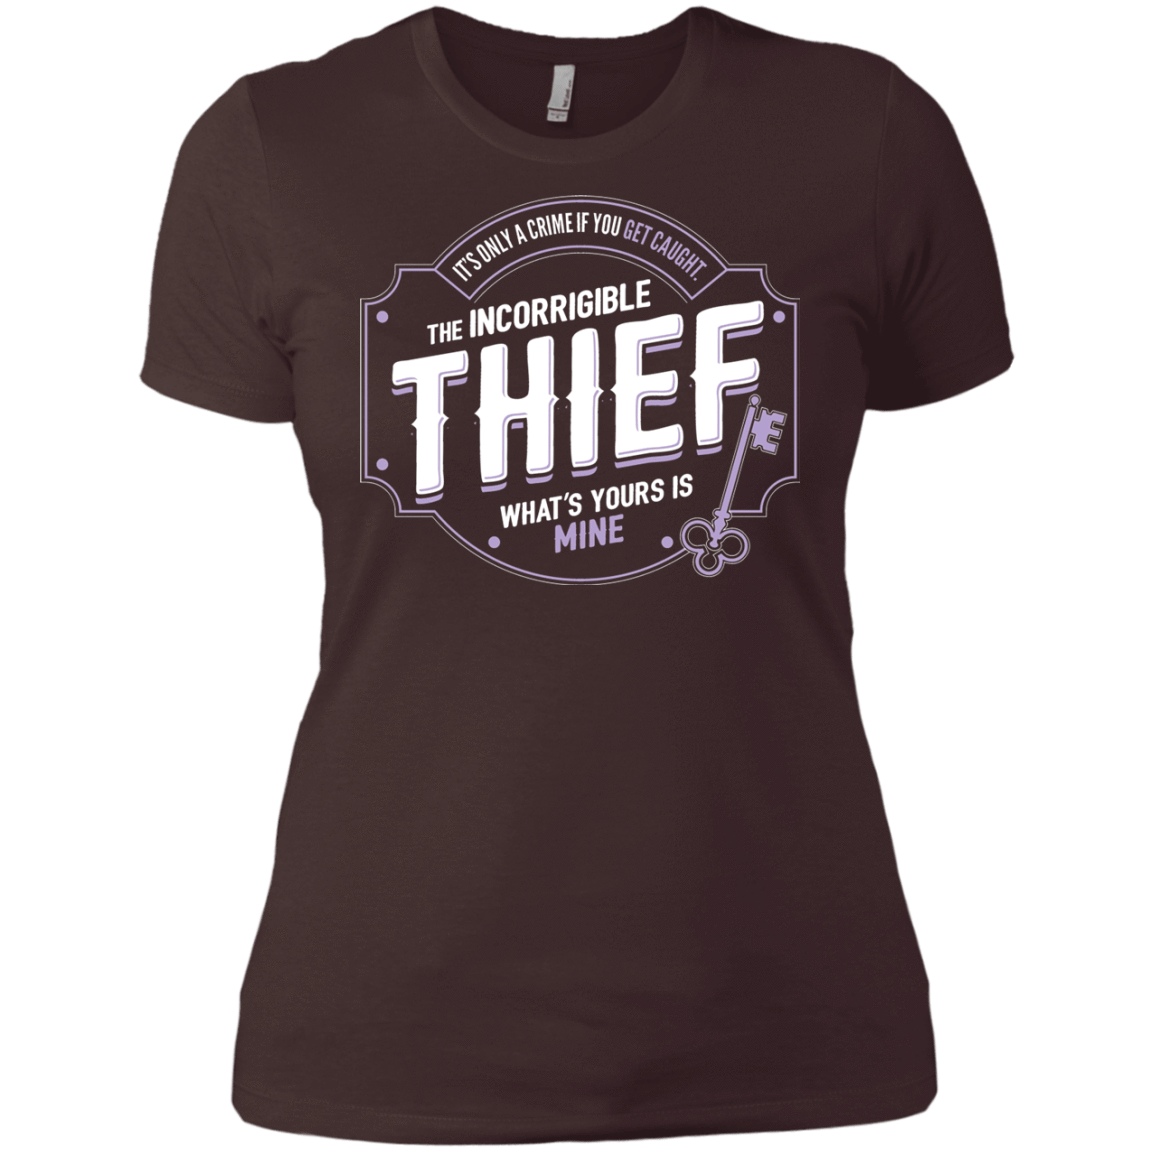 T-Shirts Dark Chocolate / X-Small Thief Women's Premium T-Shirt